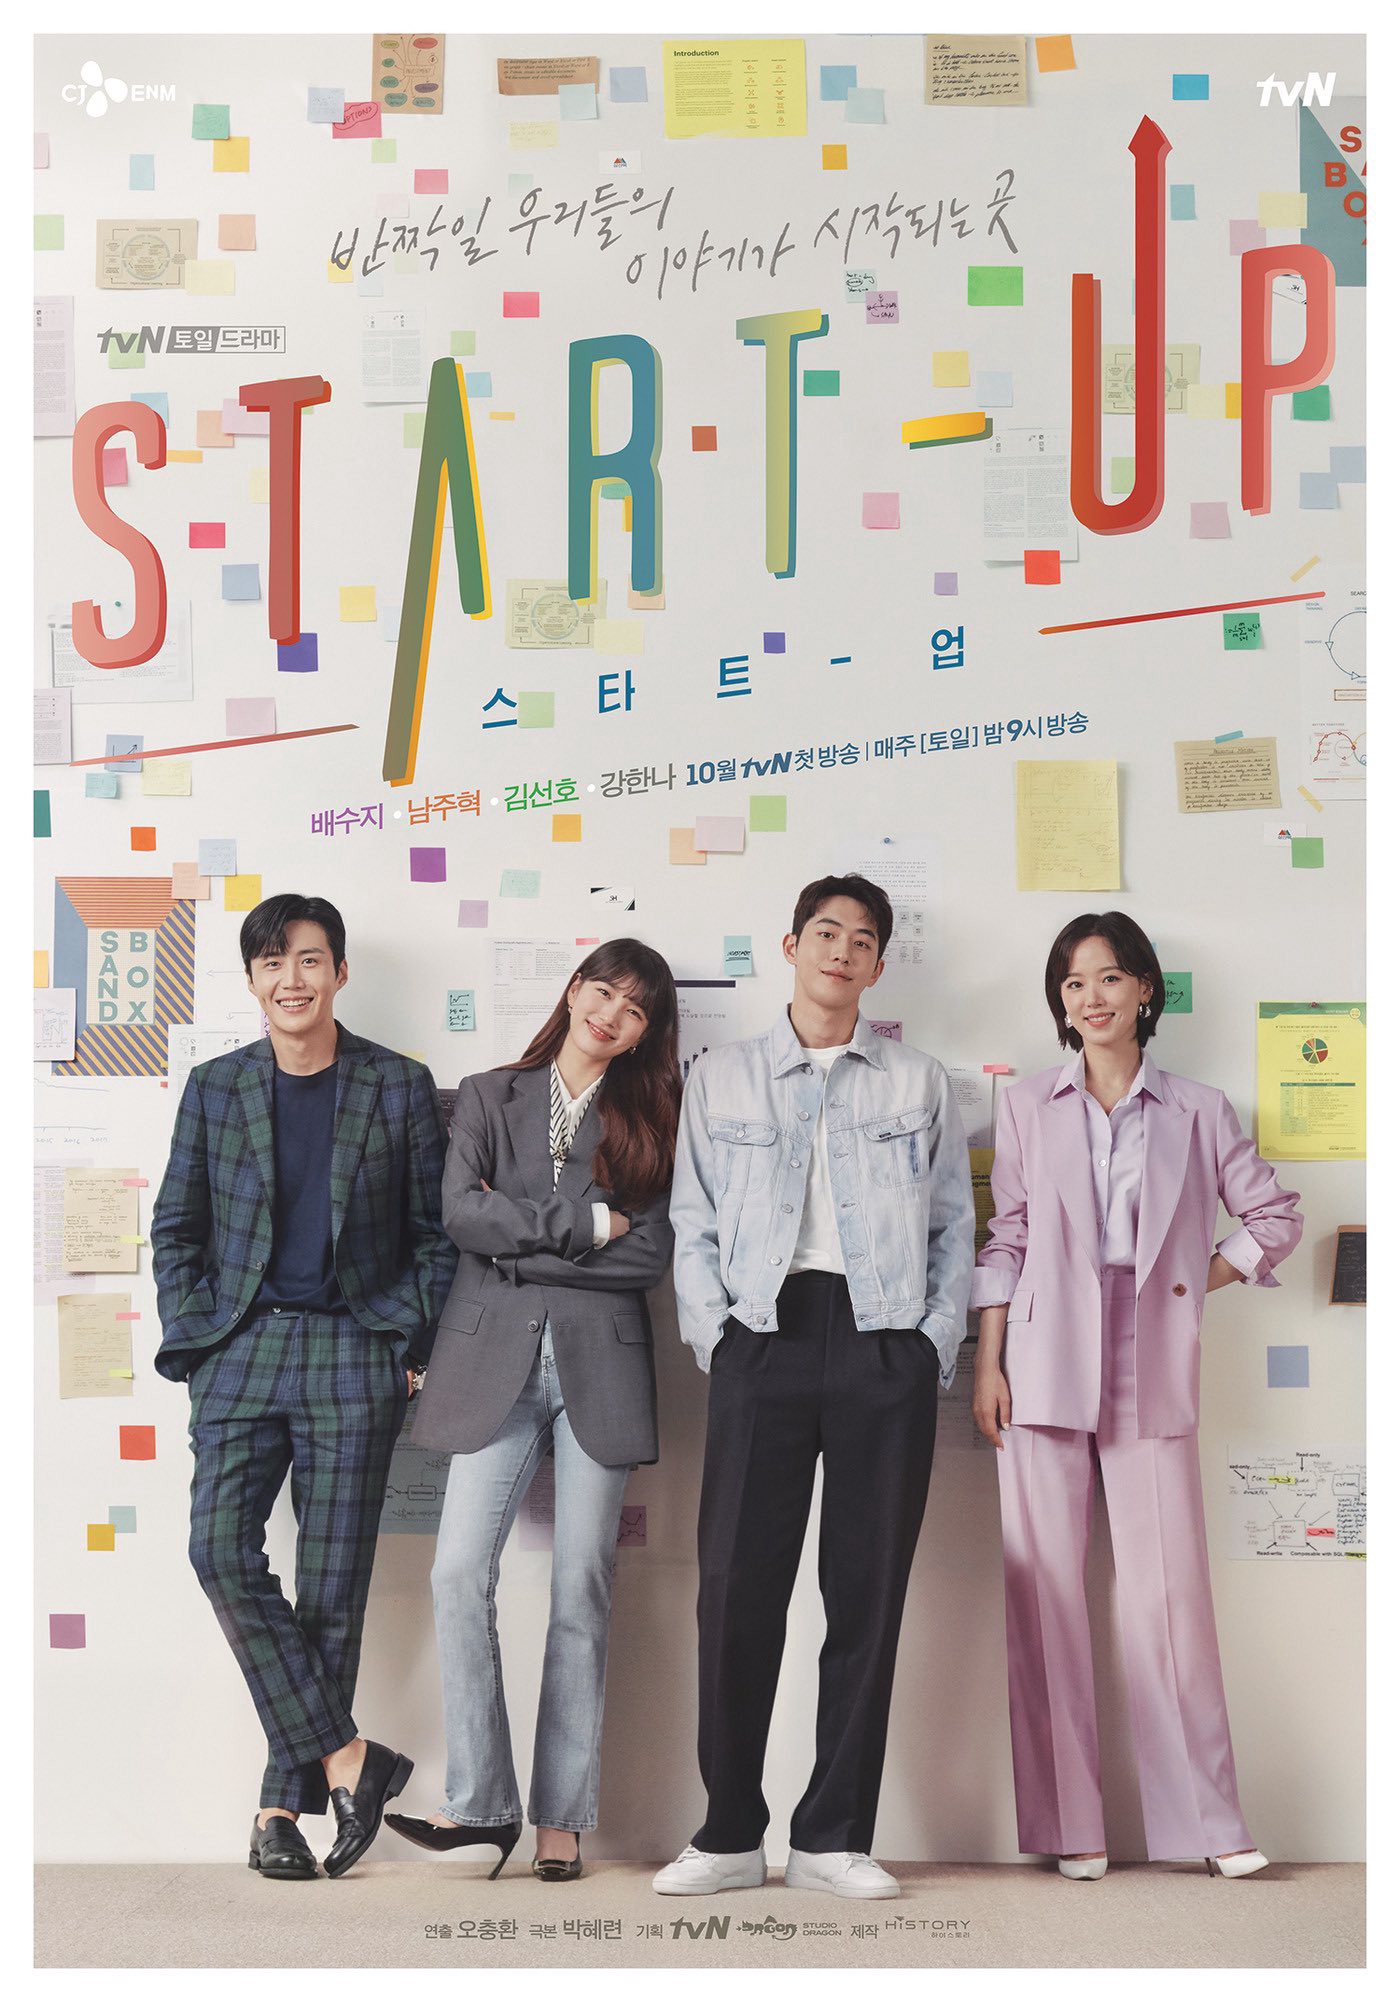  Start-Up เวอร์ชั่นเกาหลี